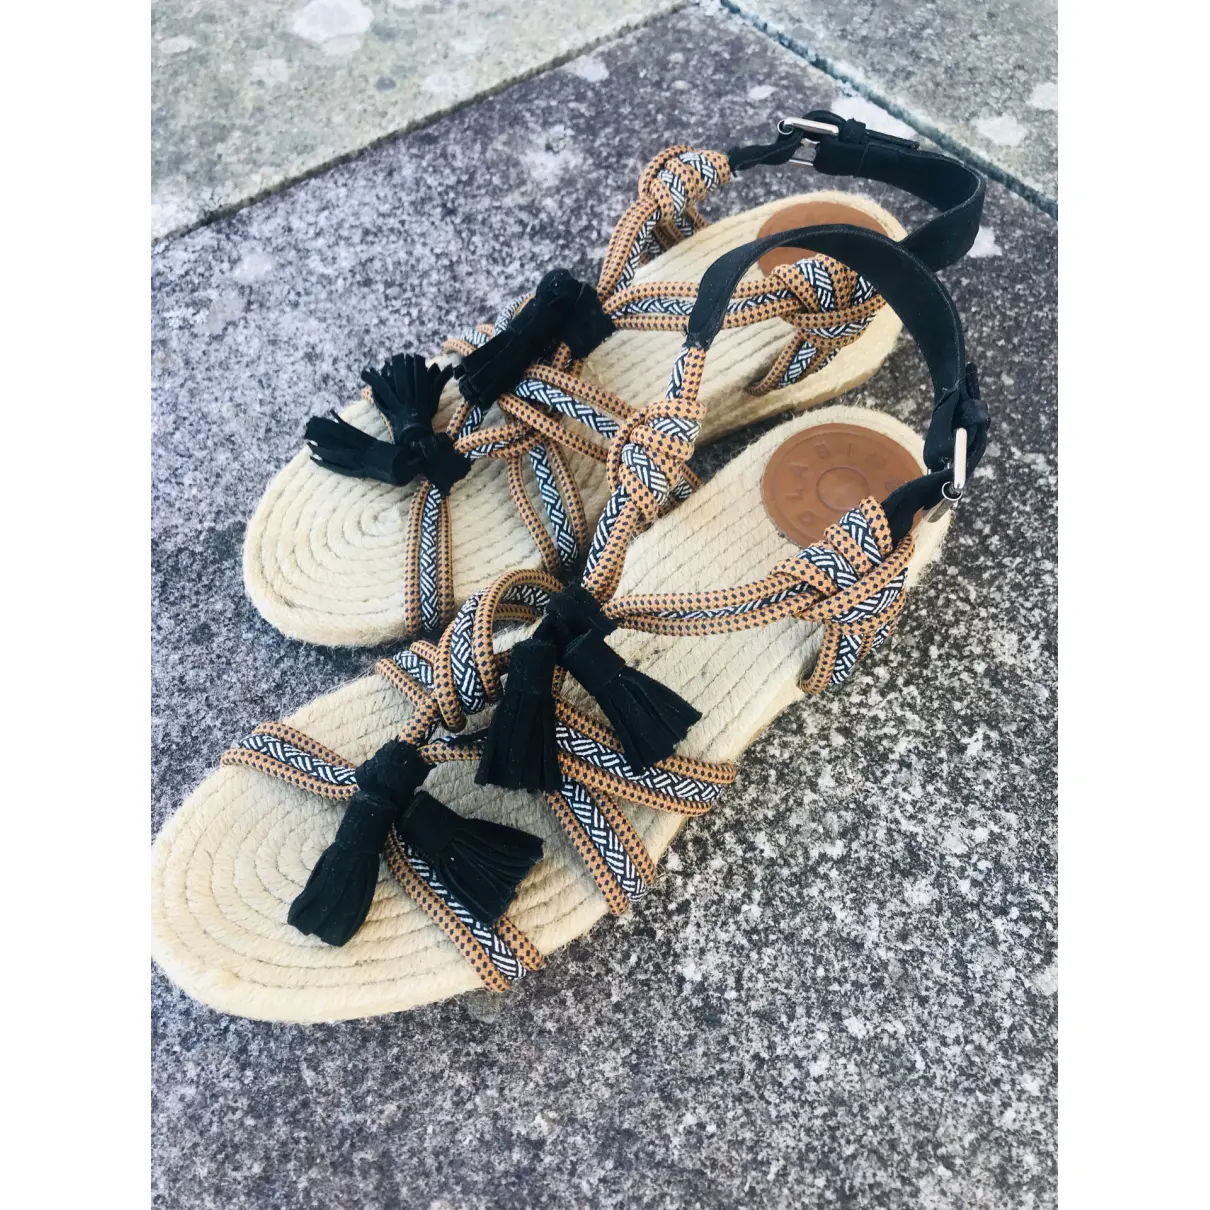 Buy Bimba y Lola Leather sandal online